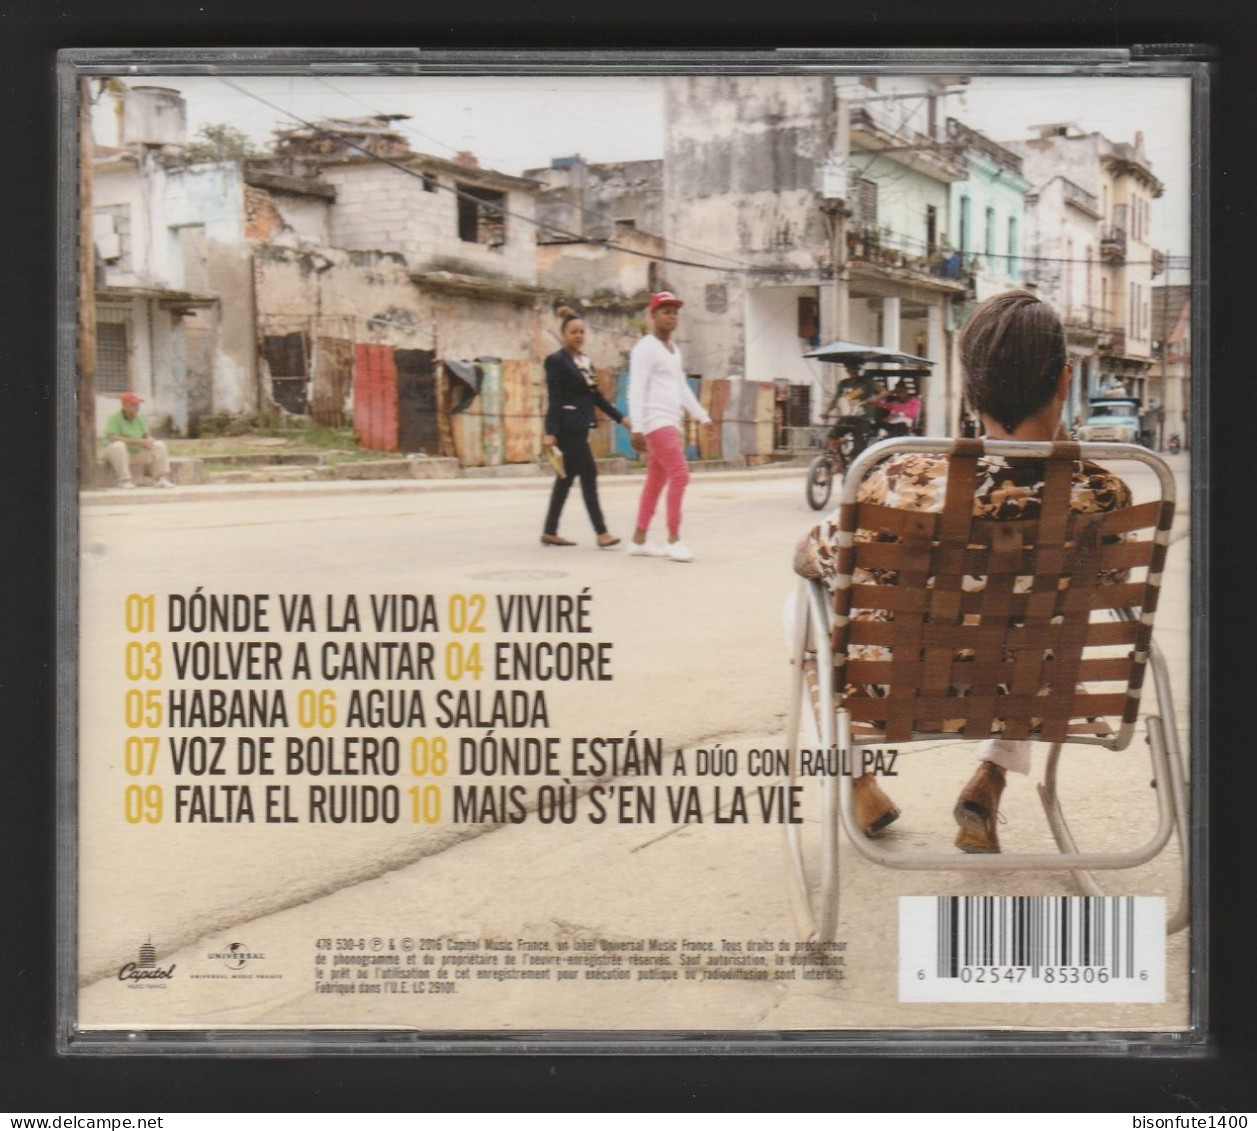 Album CD Florent PAGNY : "Habana" De 2016 Avec 10 Titres (Voir Photos) - Autres - Musique Espagnole